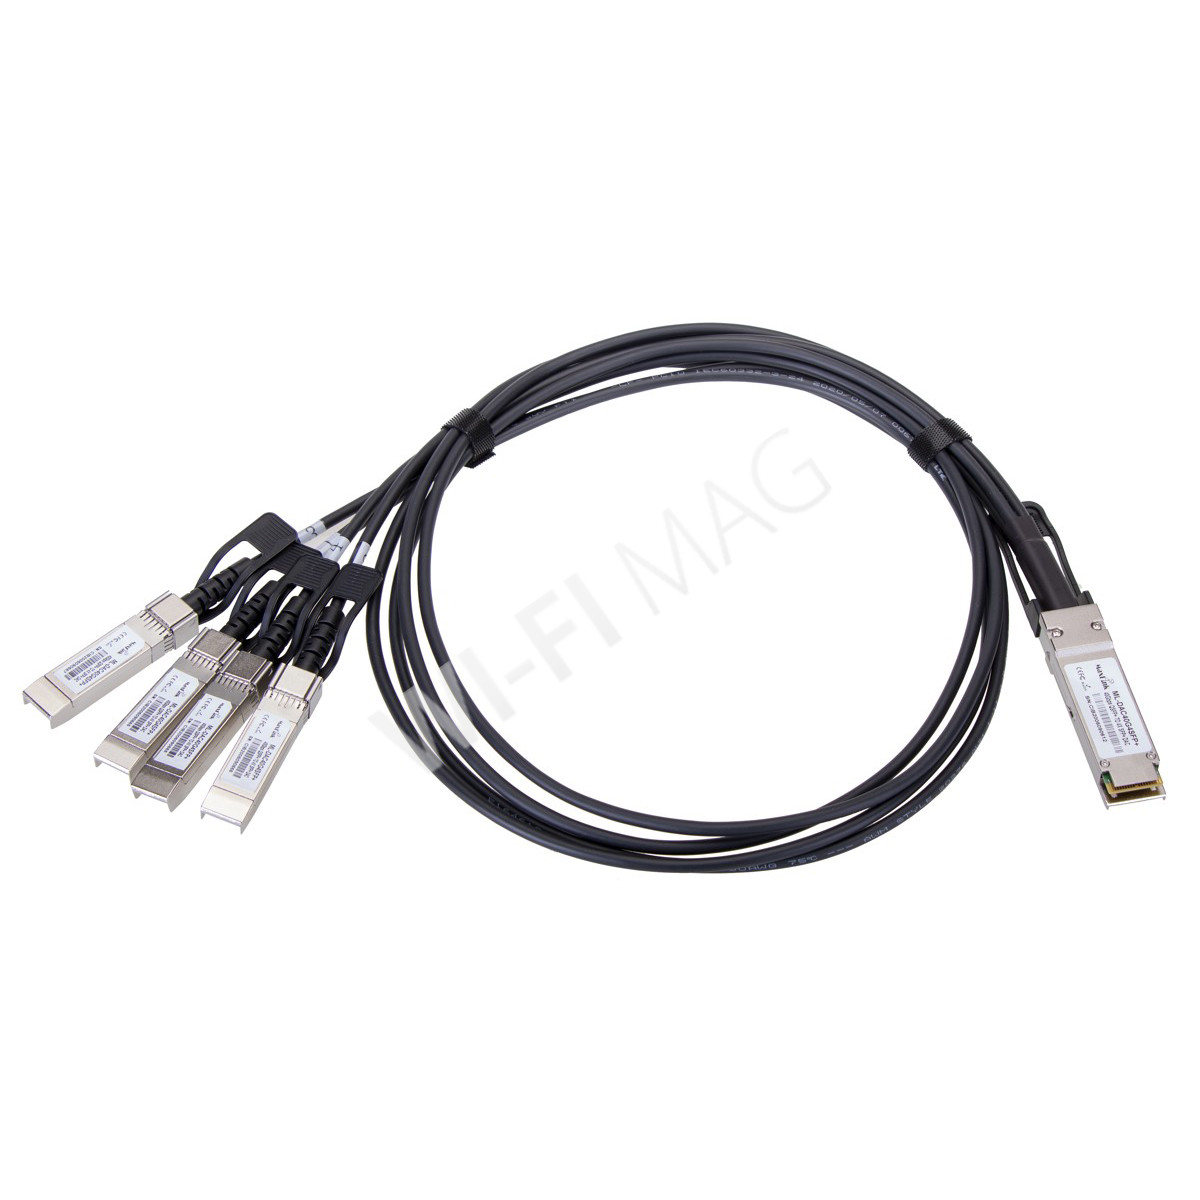 Max Link 40G QSFP+ to 4xSFP+ DAC Cable, соединительный кабель, длина 2 м.